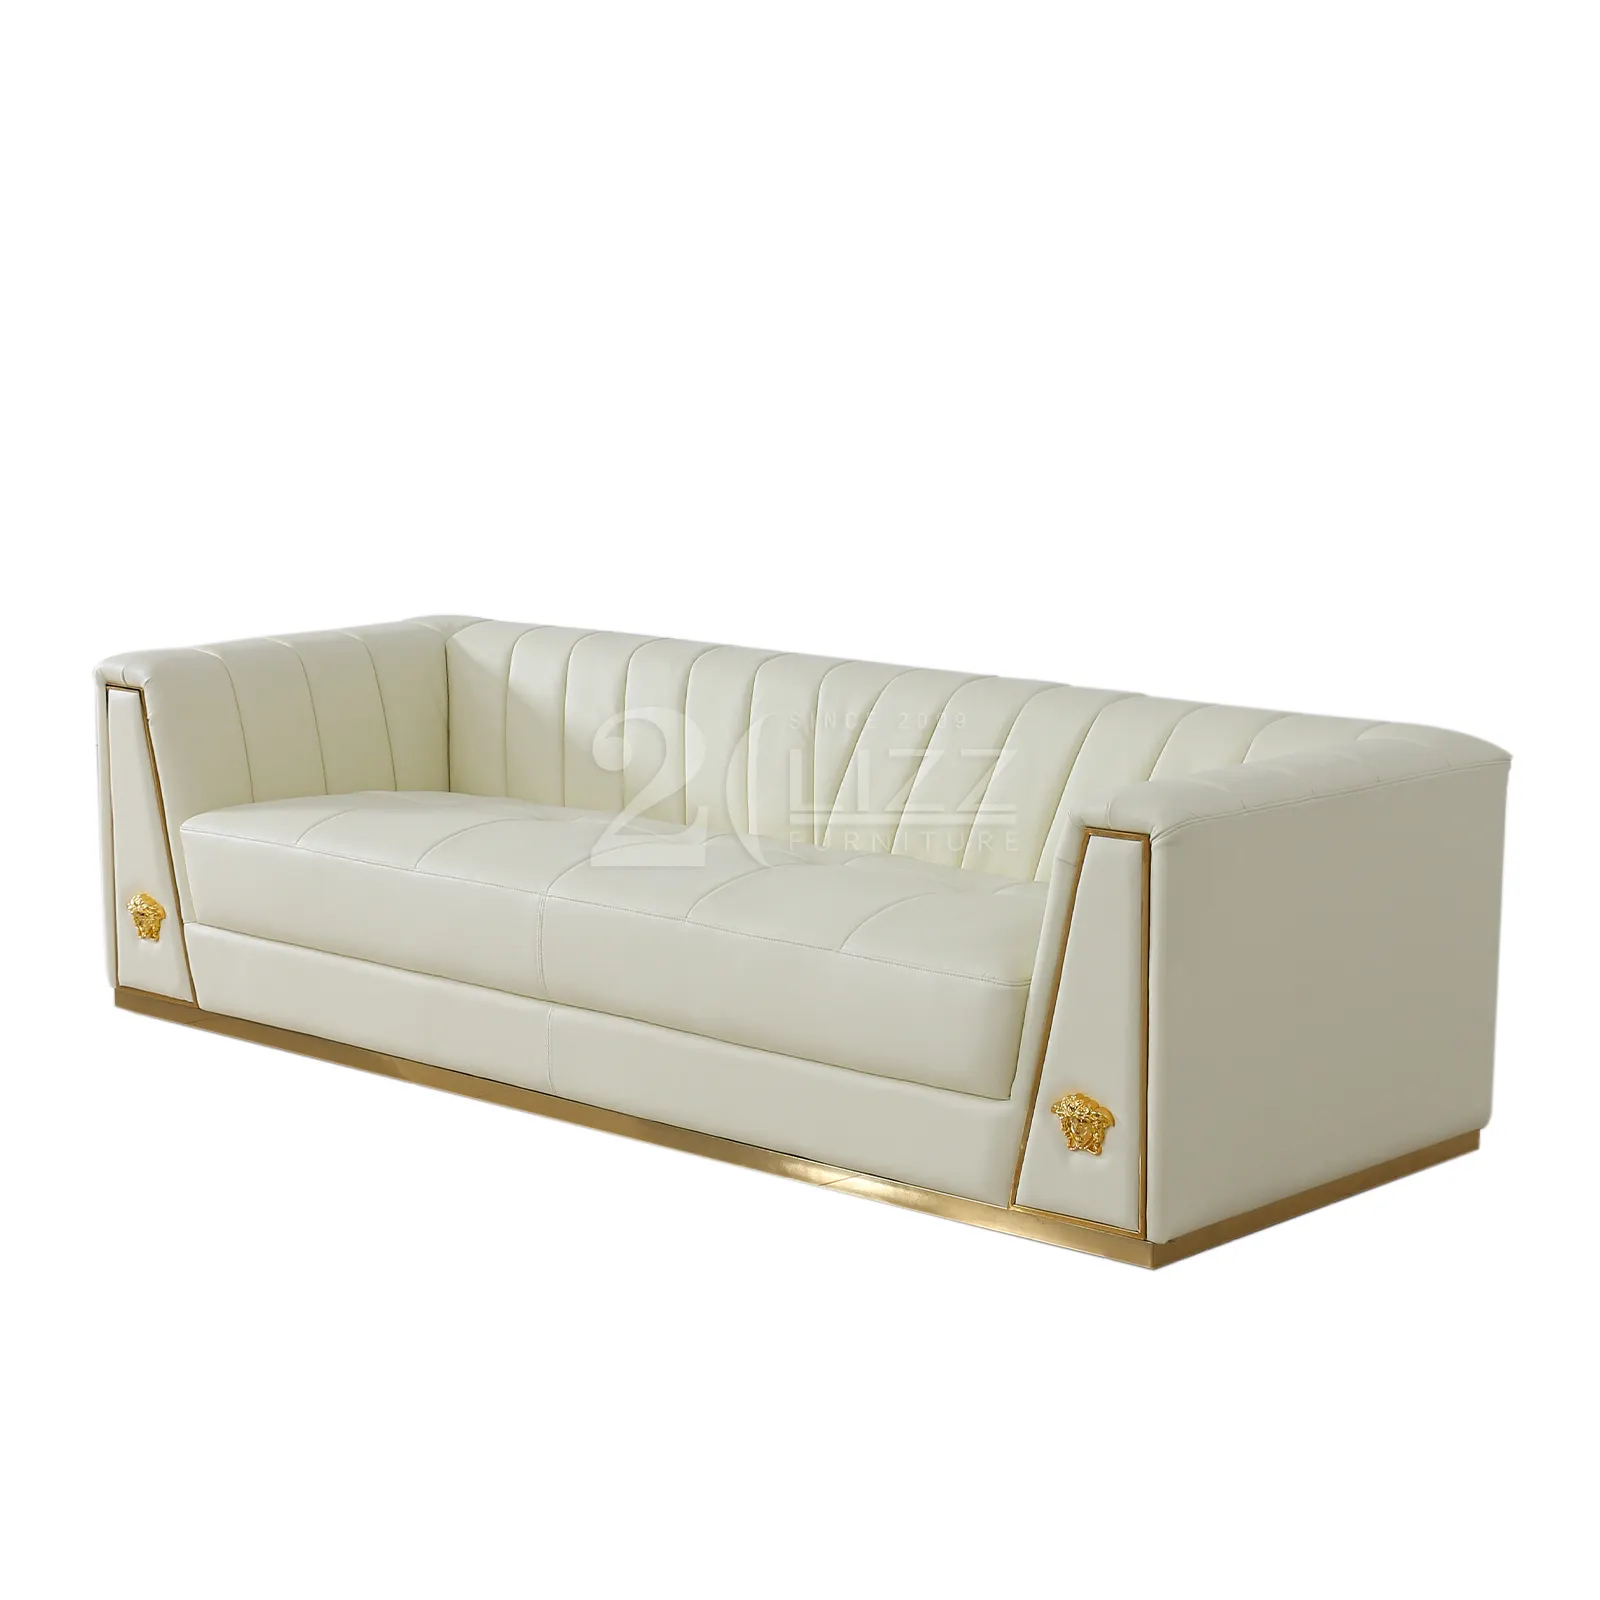 Modernes Sofa Luxusmarke Beige Top Grain Italienische Leder Schnitts ofa